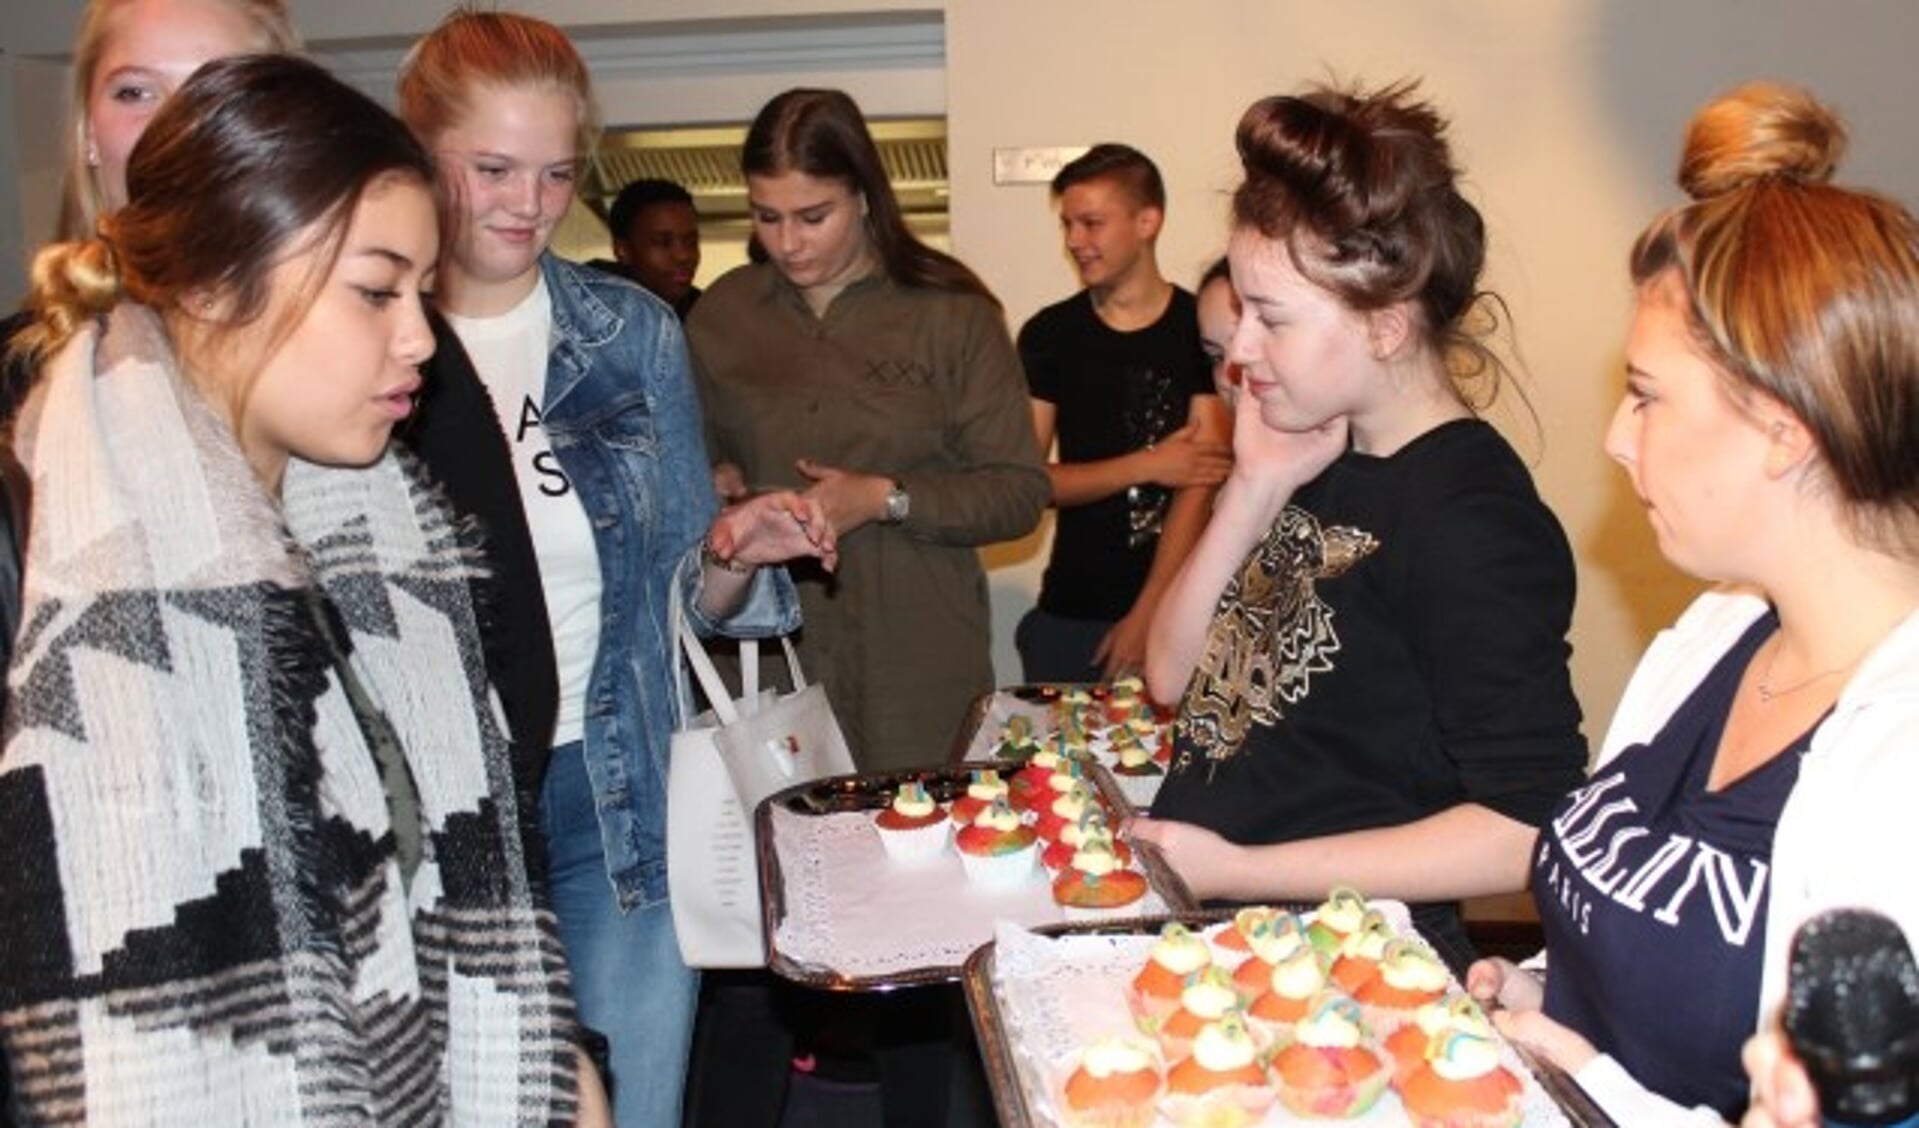 De leerlingenraad van De Baanbreker trakteert op zelfgebakken cupcakes met regenboogversiering ter gelegenheid van Coming Out Dag. (Foto: Lysette Verwegen)